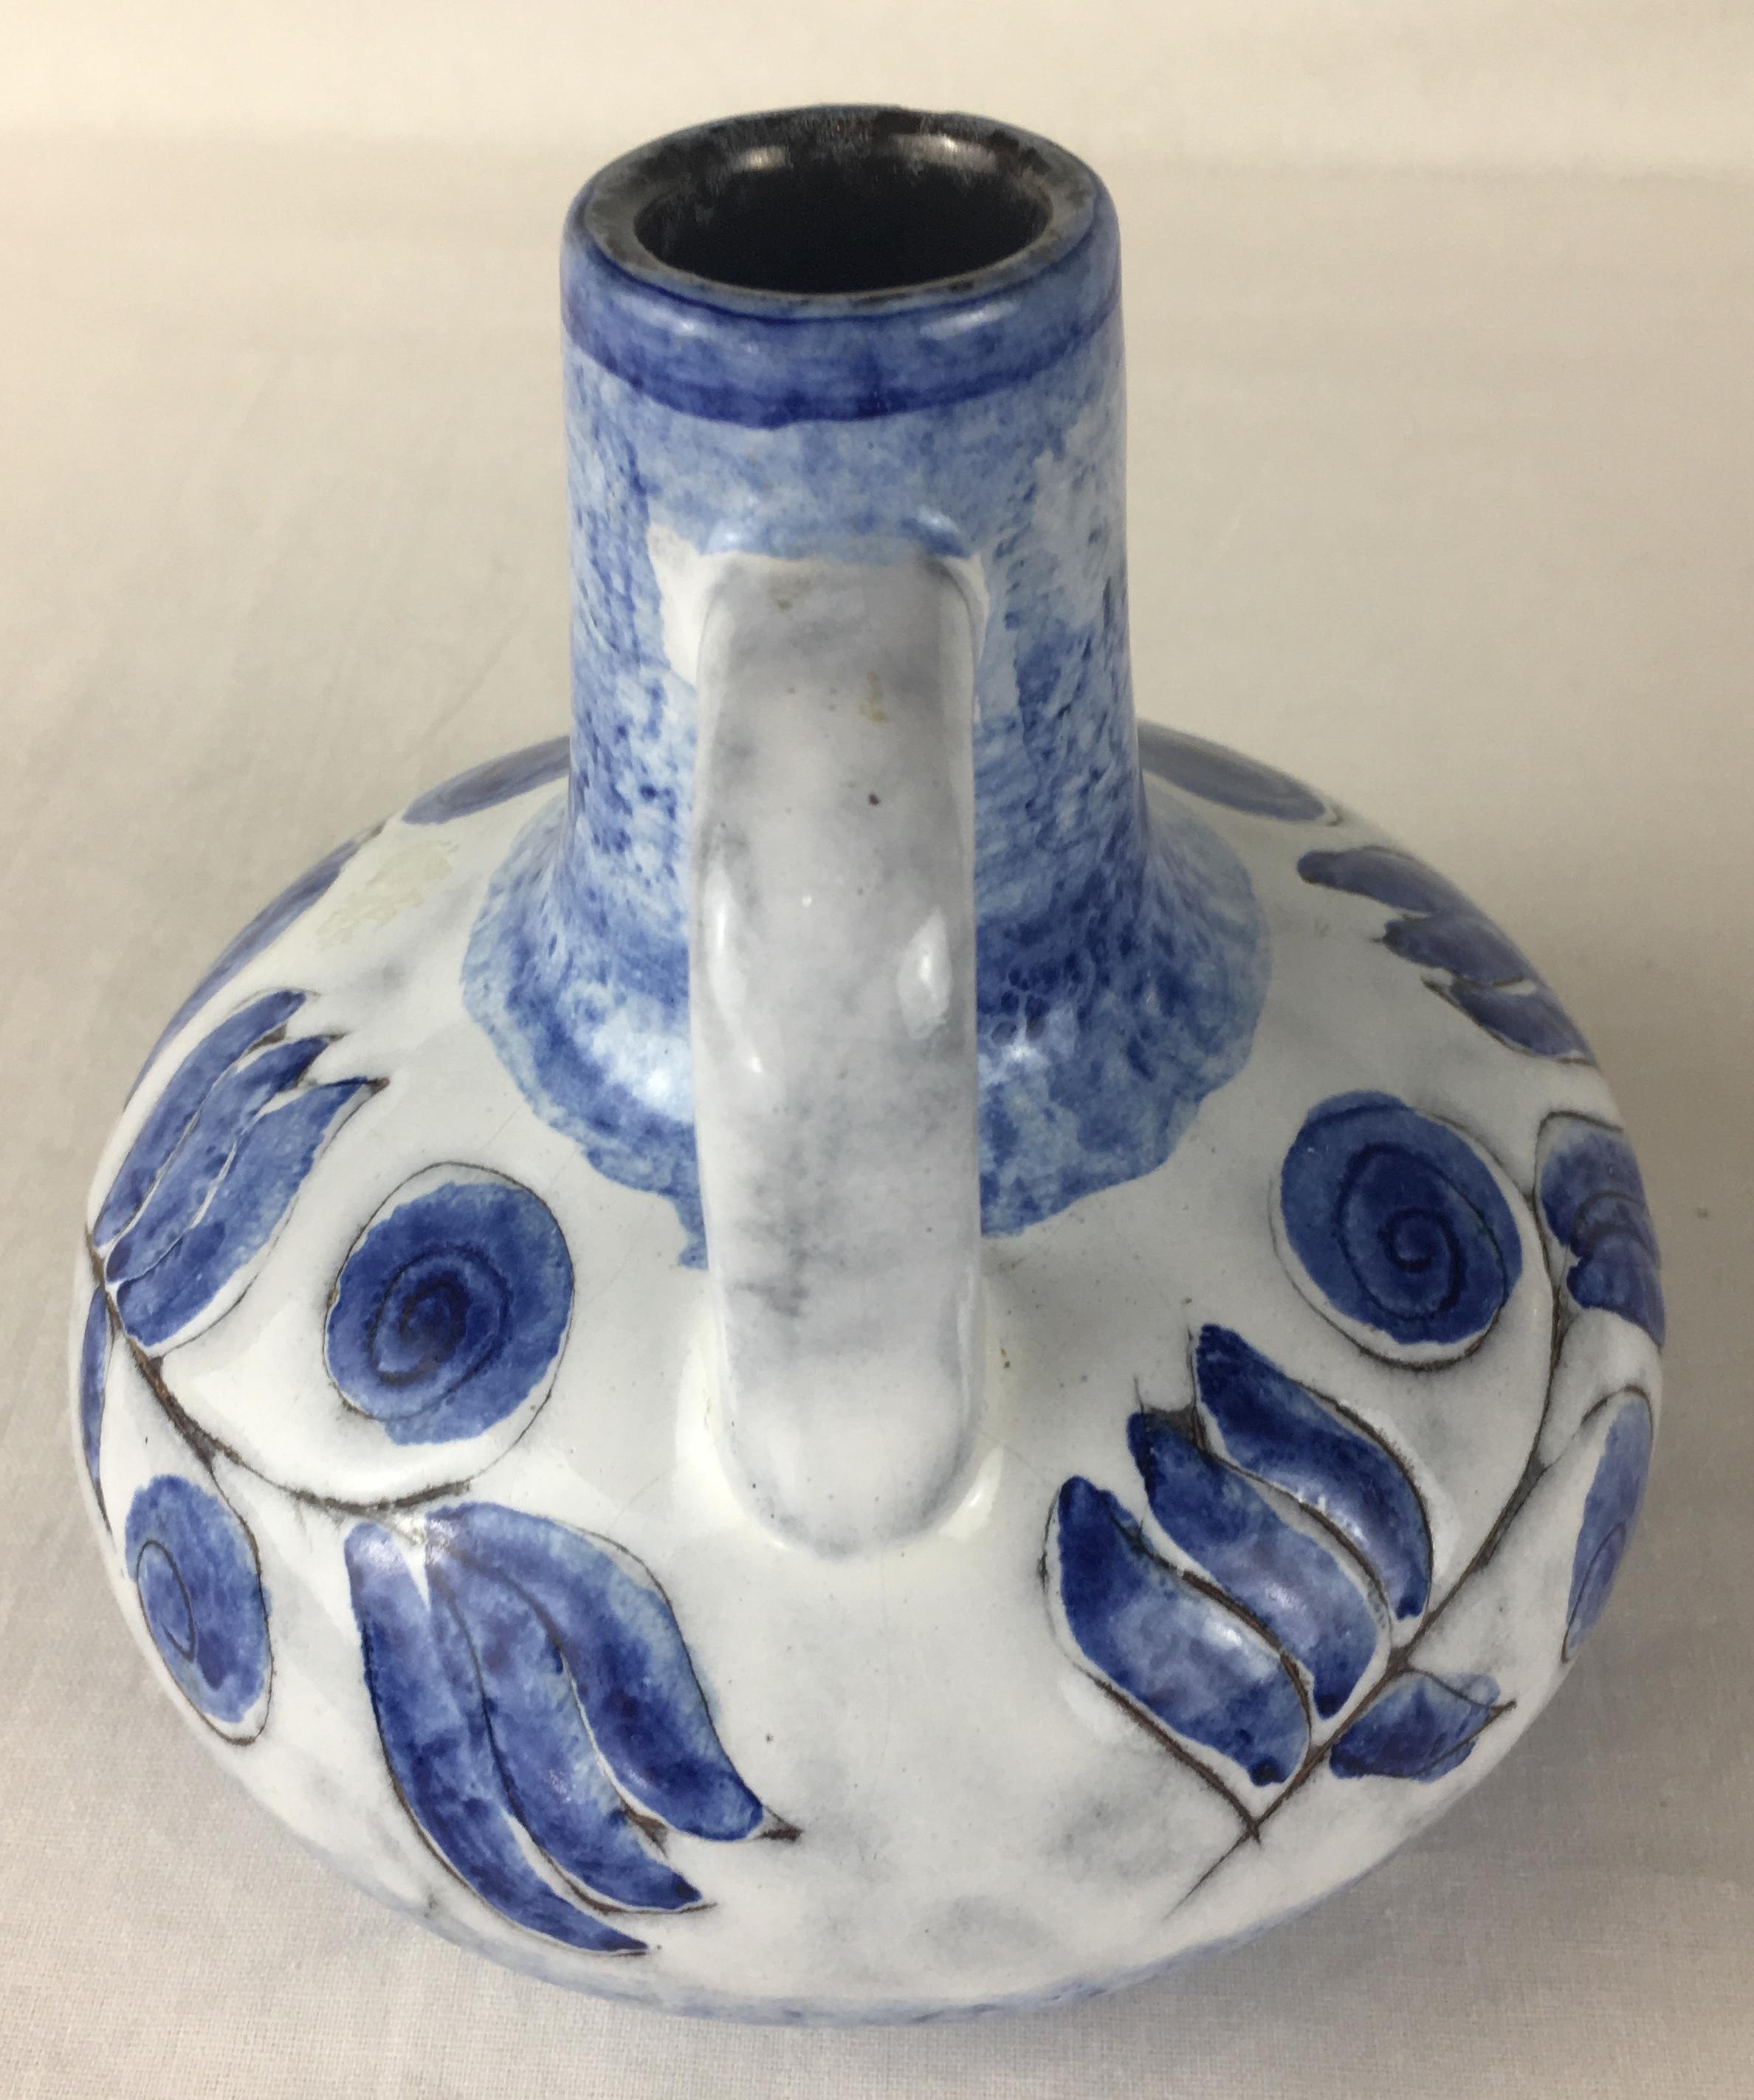 Decorative French Studio Pottery Ceramic Vessel or Jar In Good Condition For Sale In Miami, FL